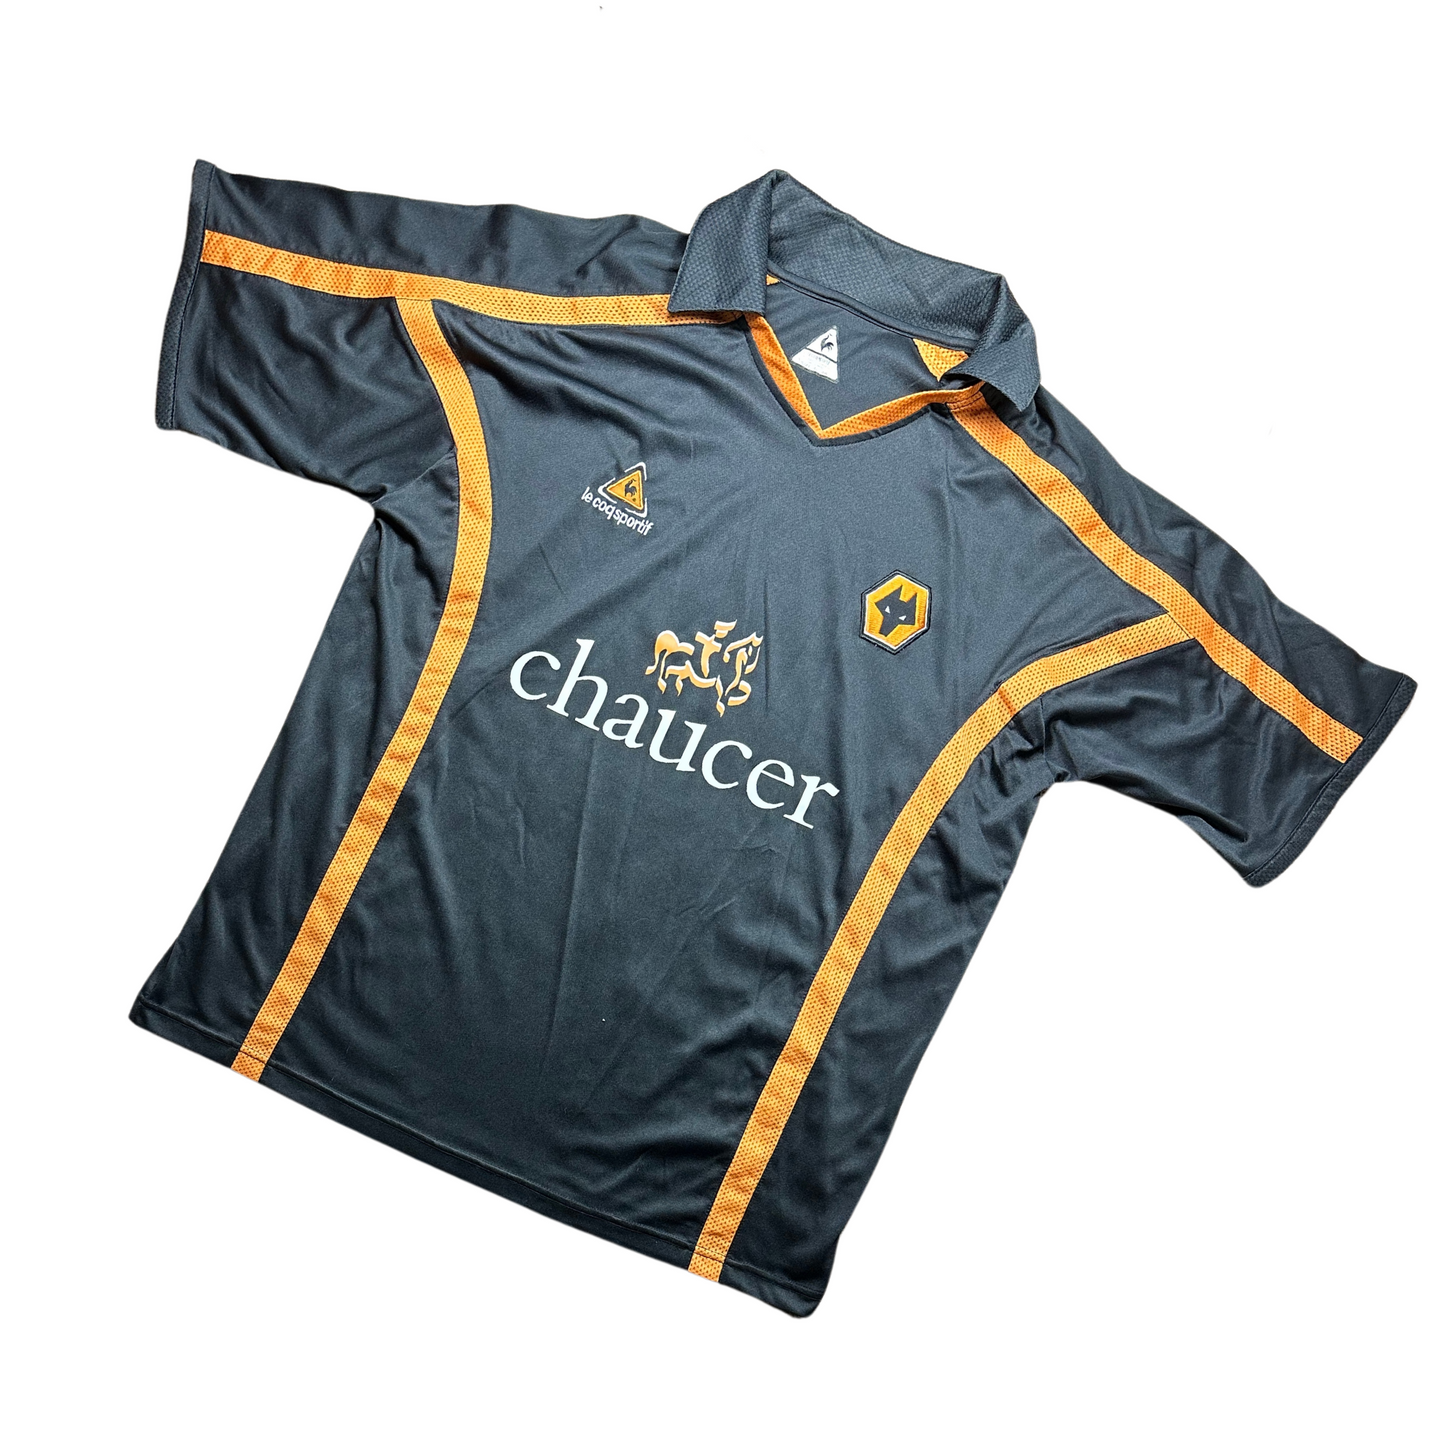 Wolves 2005/2006 Away Football Shirt